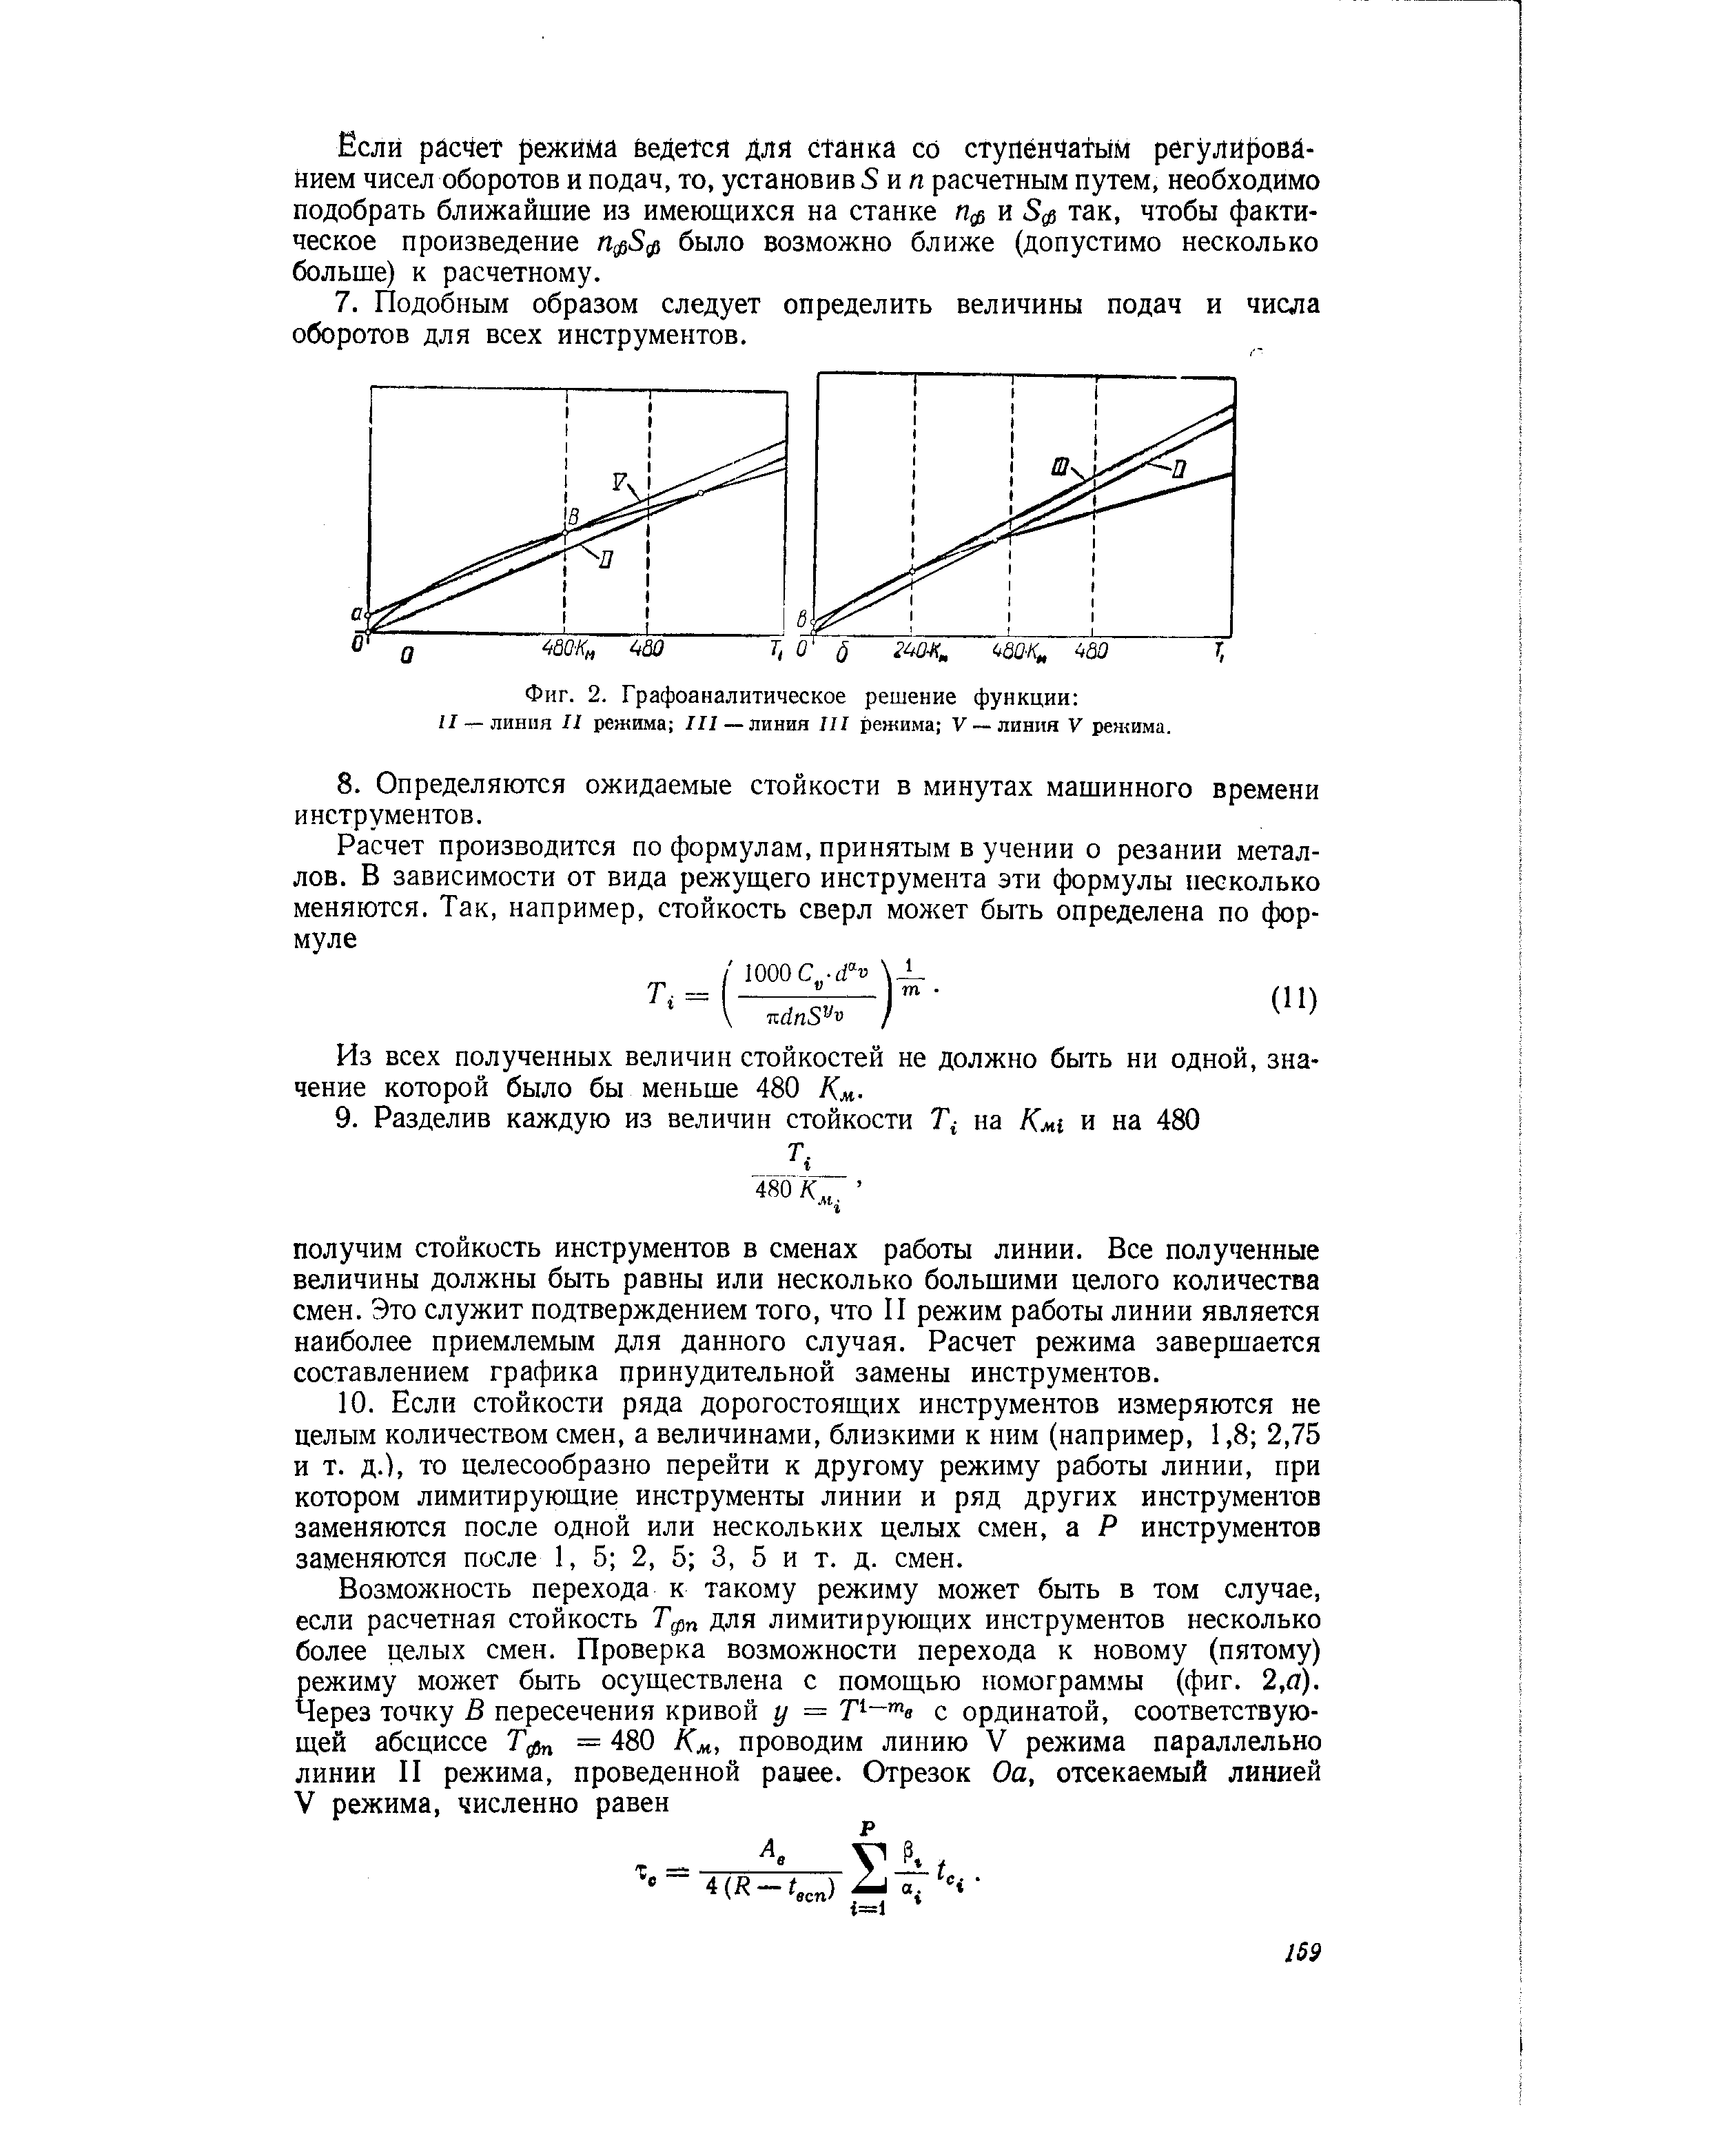 Фиг. 2. Графоаналитическое решение функции линия II режима Л/ —линия III режима V —линия V режима.
